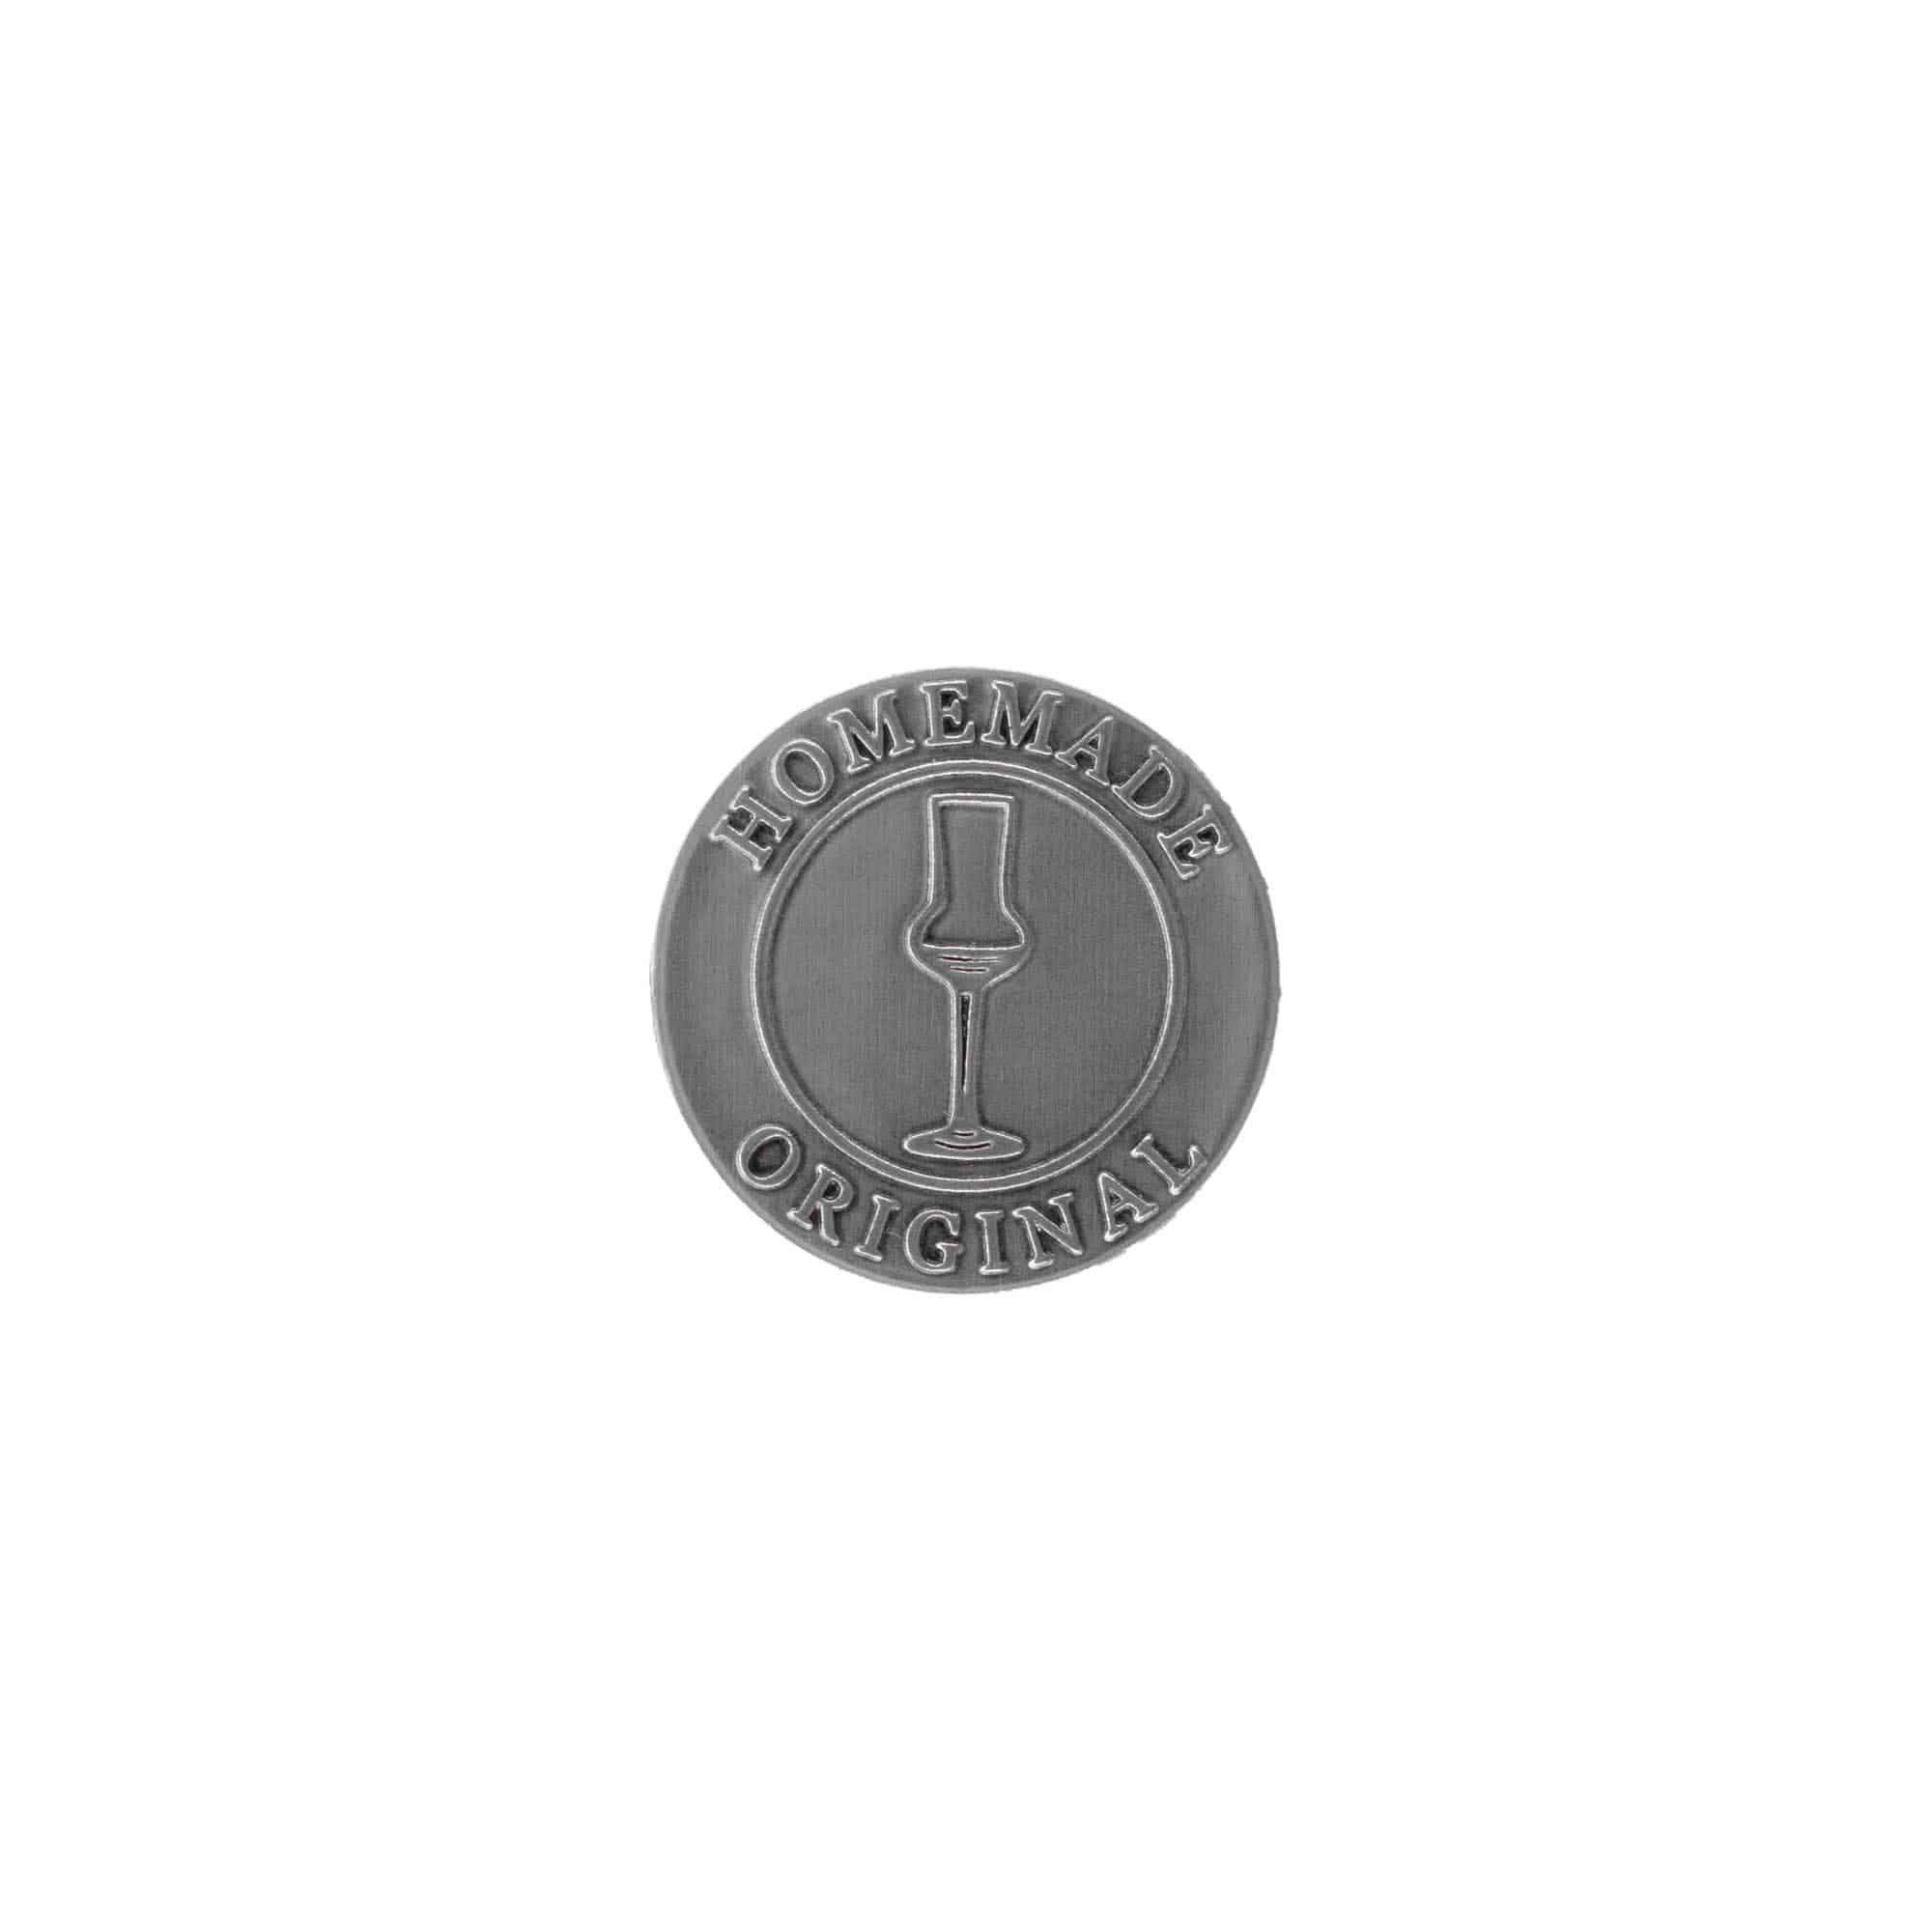 Etichetta metallica 'Original Home Made', rotonda, stagno, argento